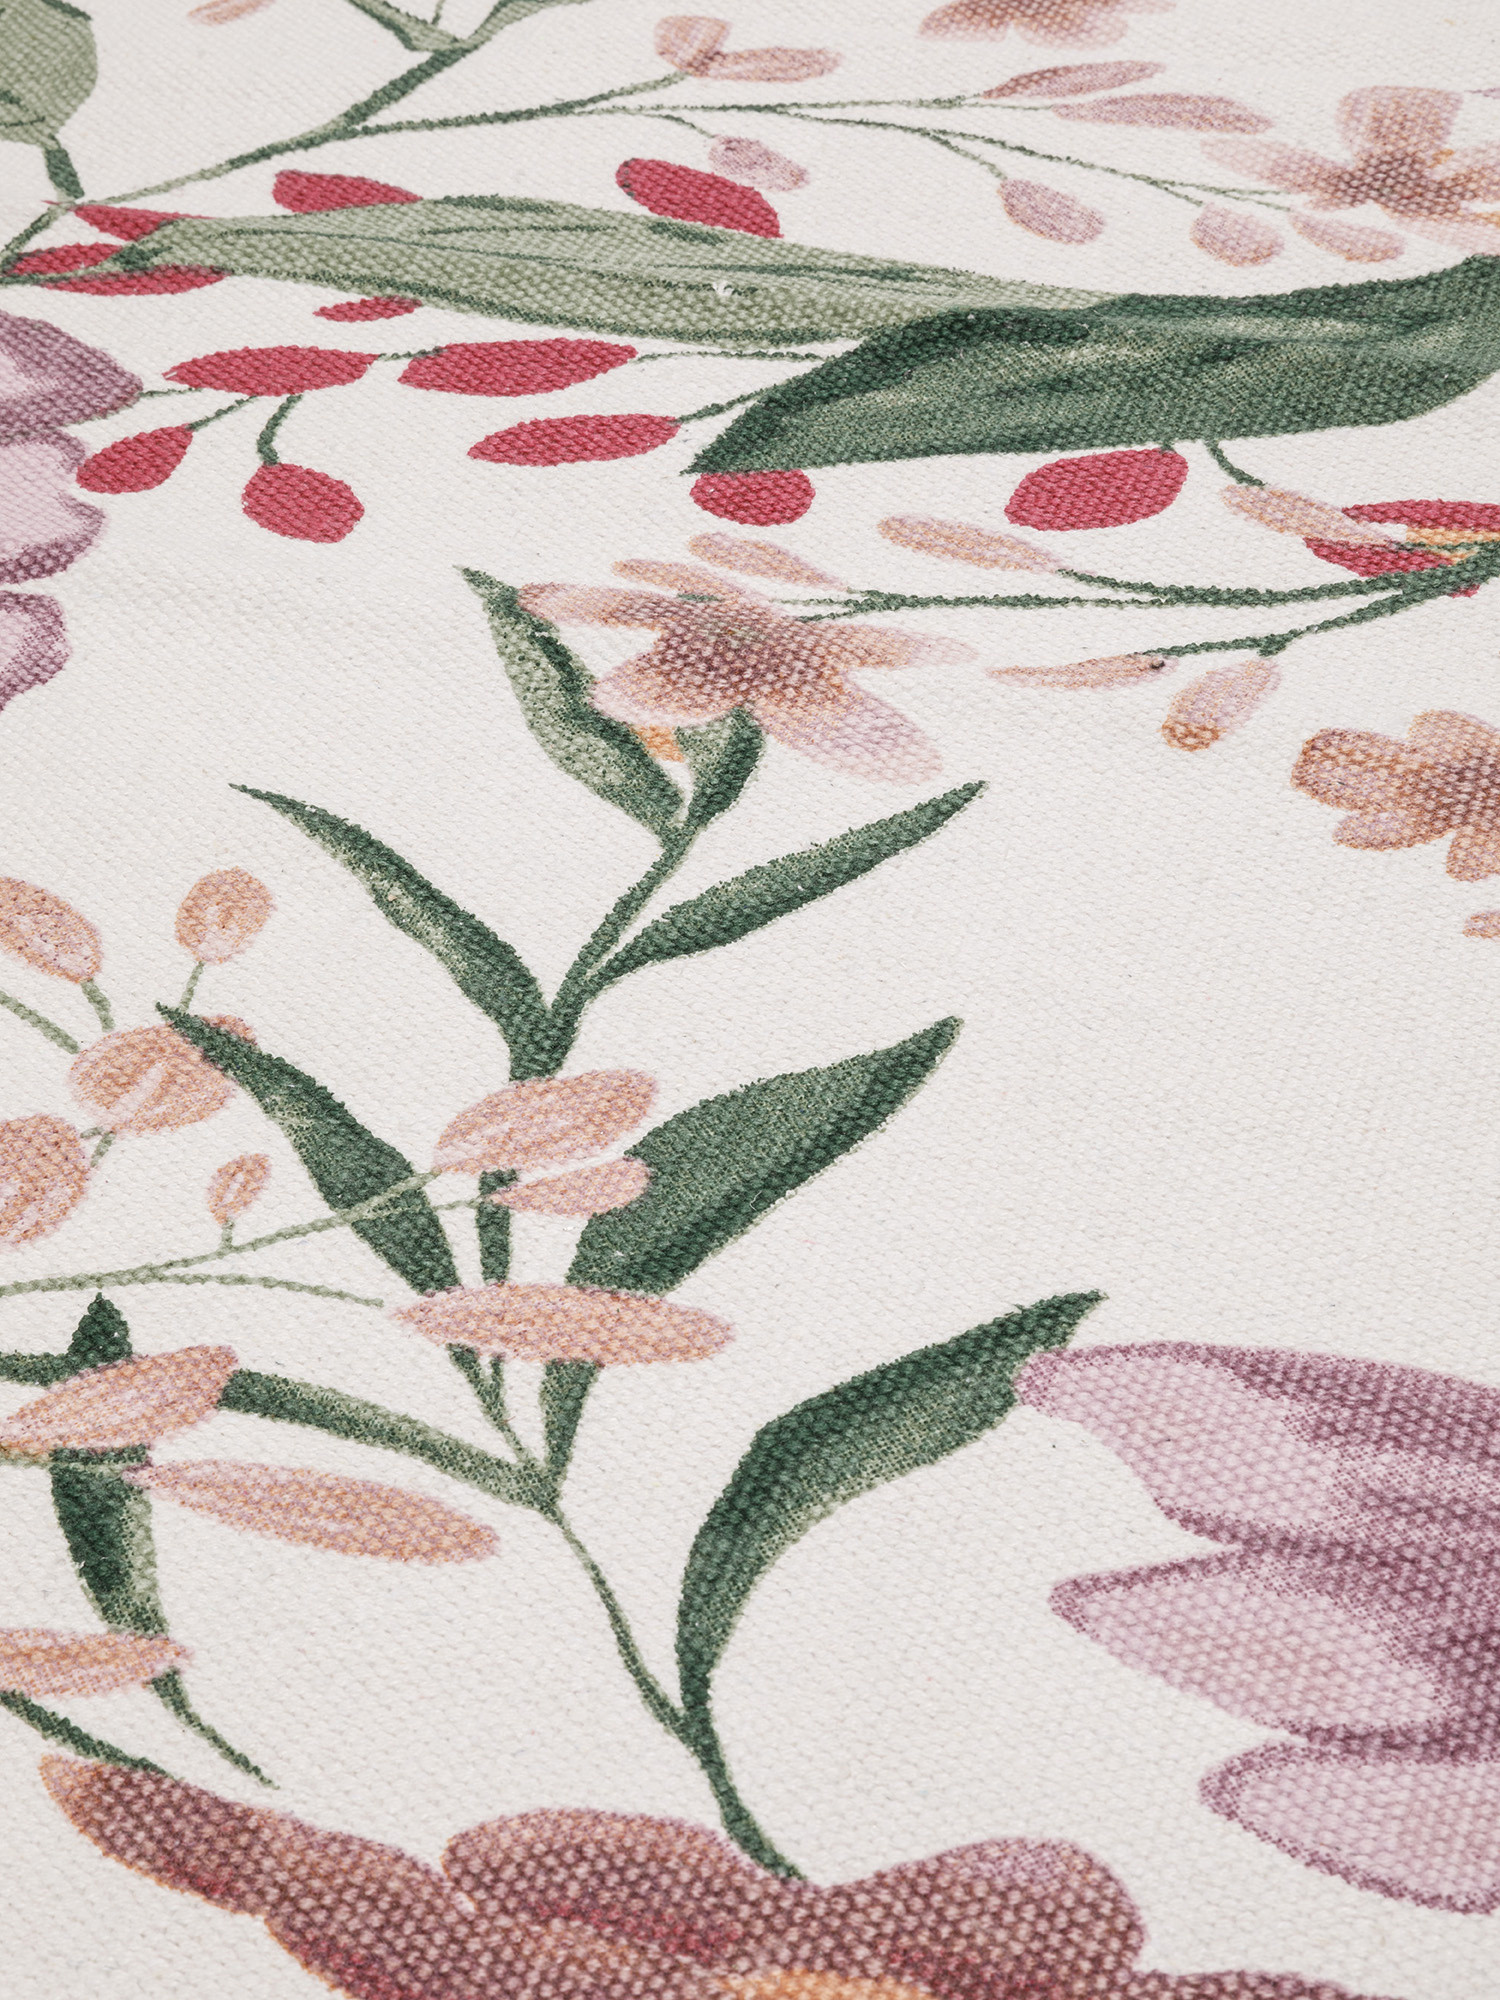 Cotton floral pattern kitchen rug, Multicolor, large image number 1